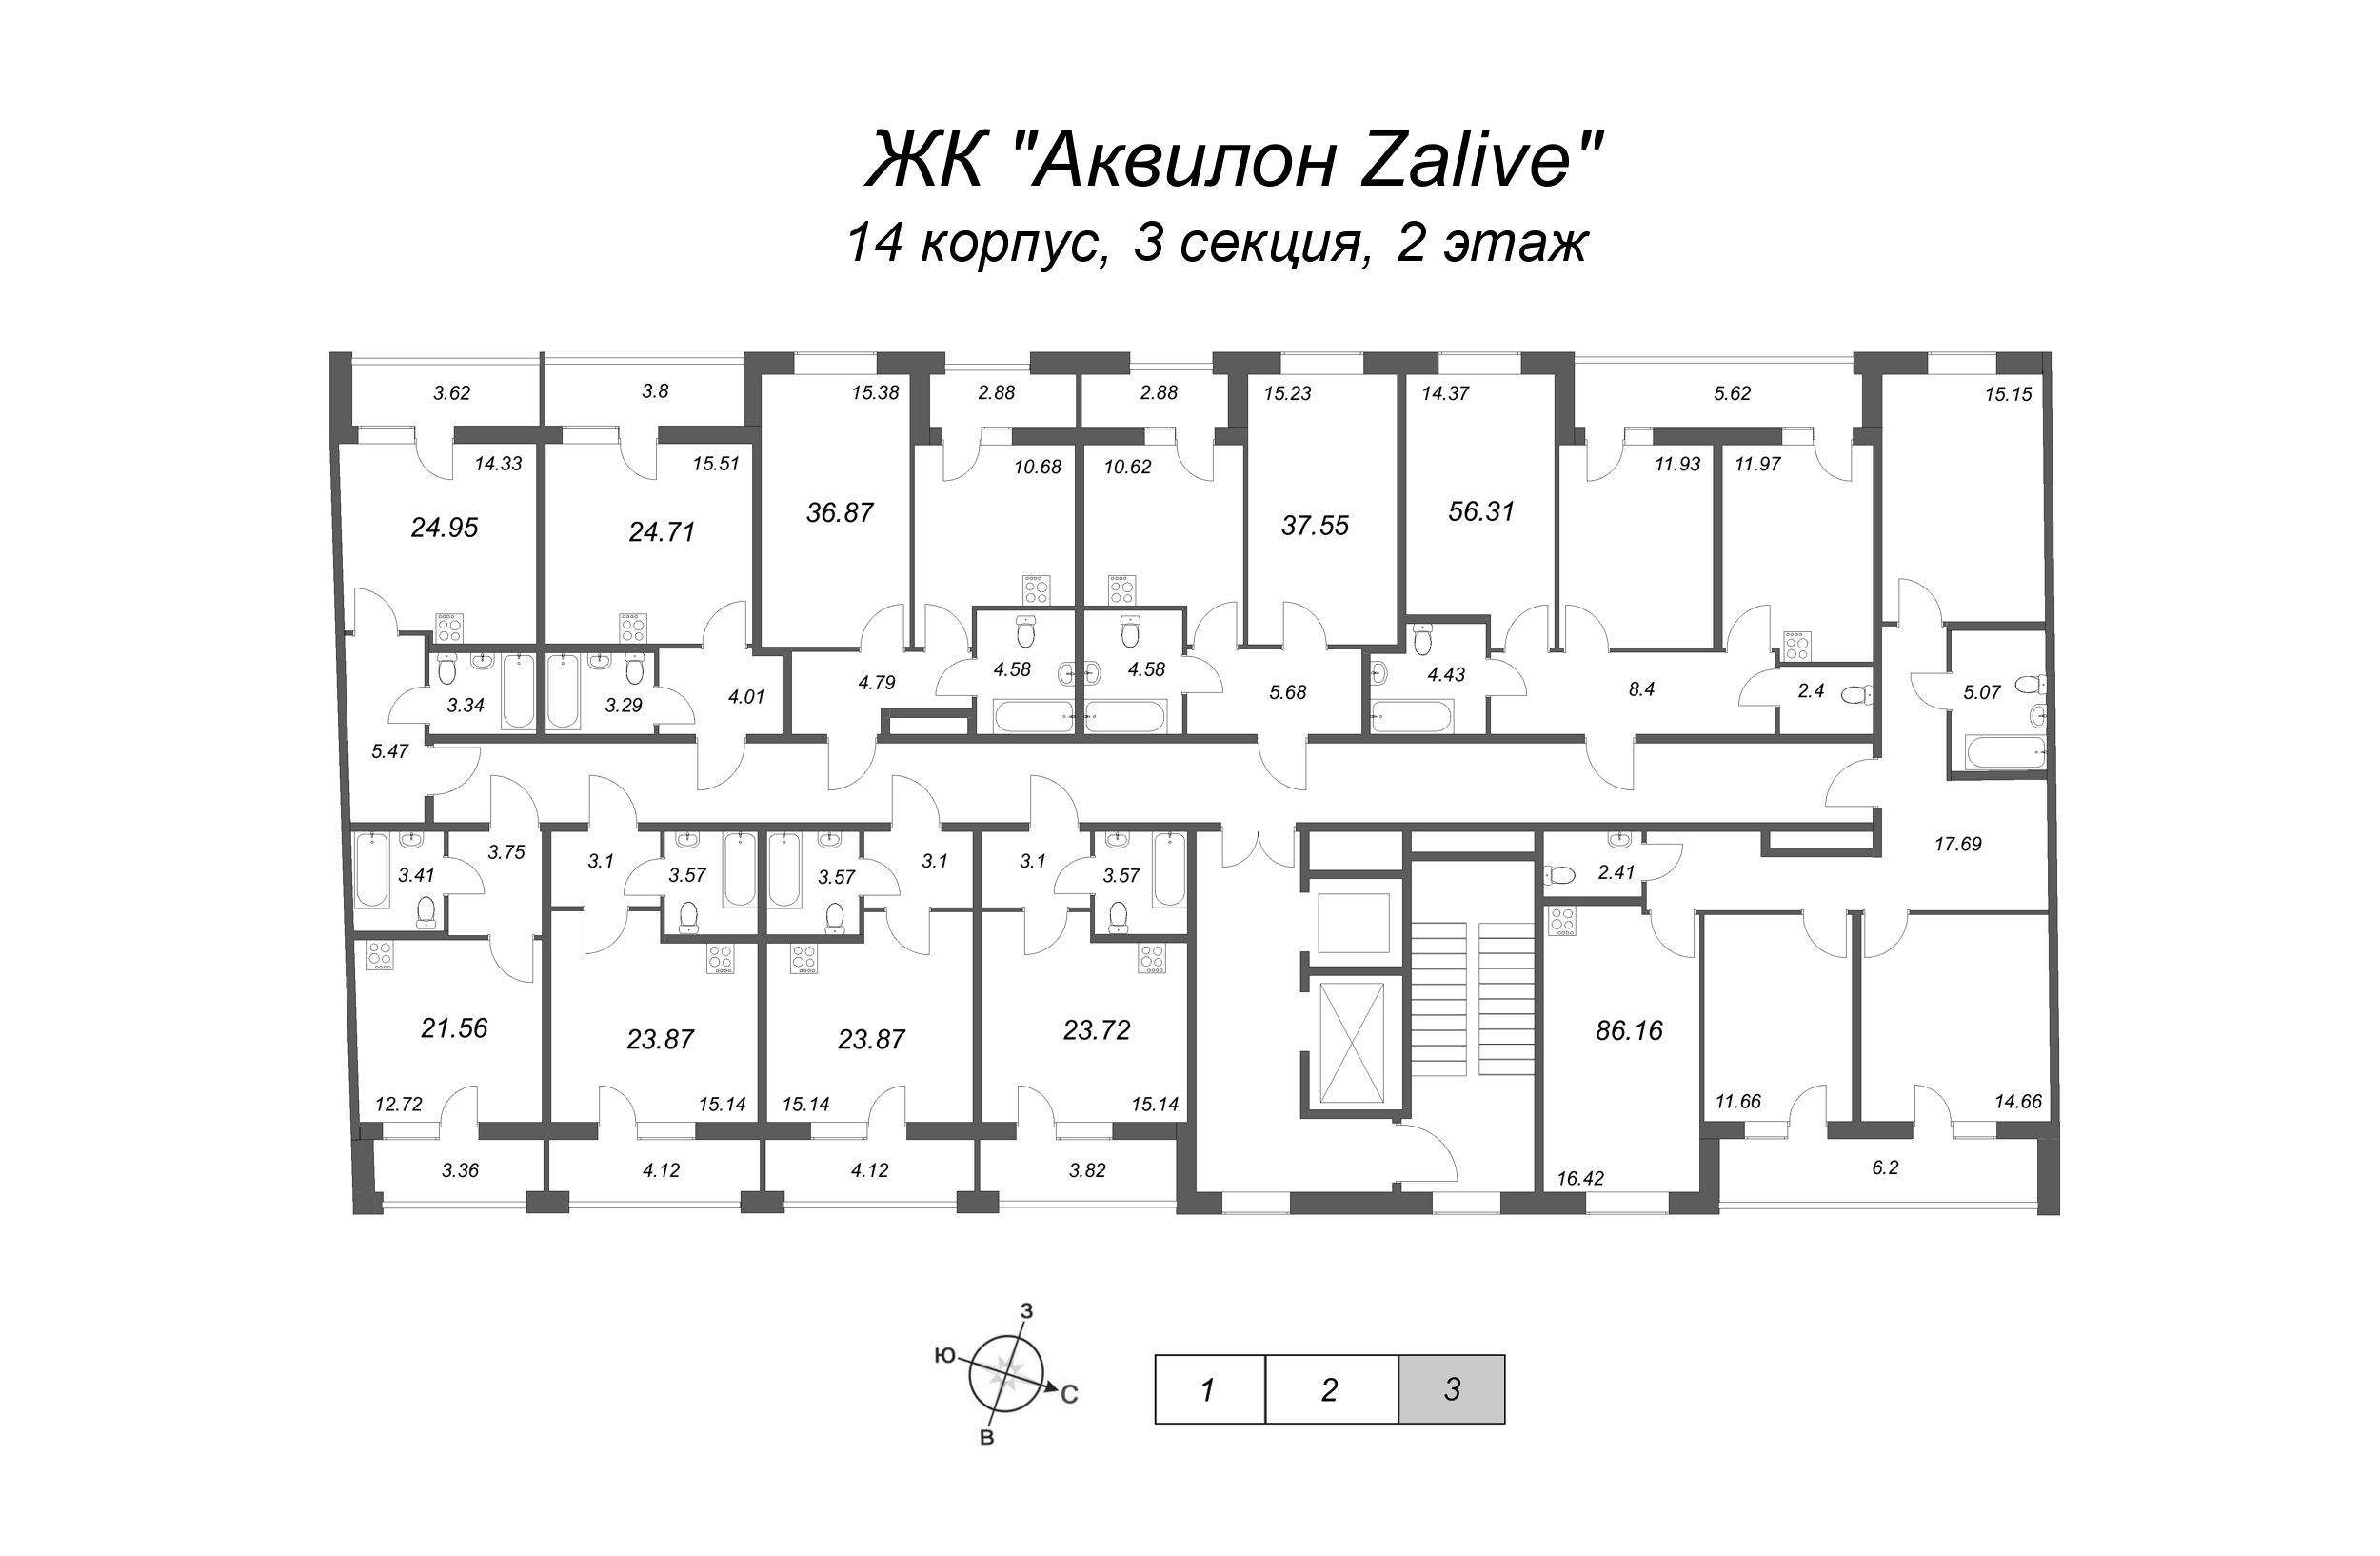 1-комнатная квартира, 37.55 м² в ЖК "Аквилон Zalive" - планировка этажа